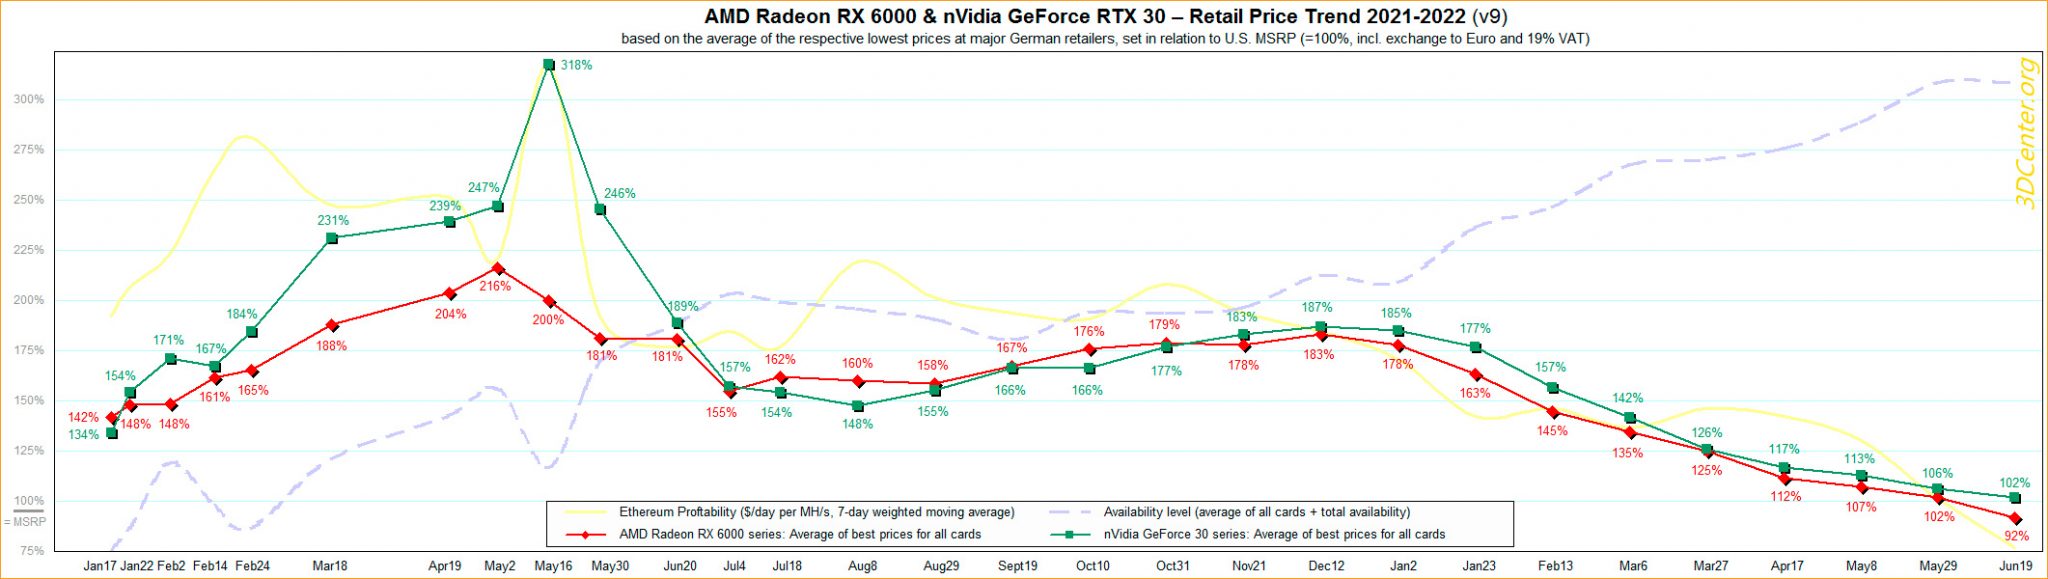 Впервые цены на видеокарты Radeon RX 6000 просели ниже рекомендованных